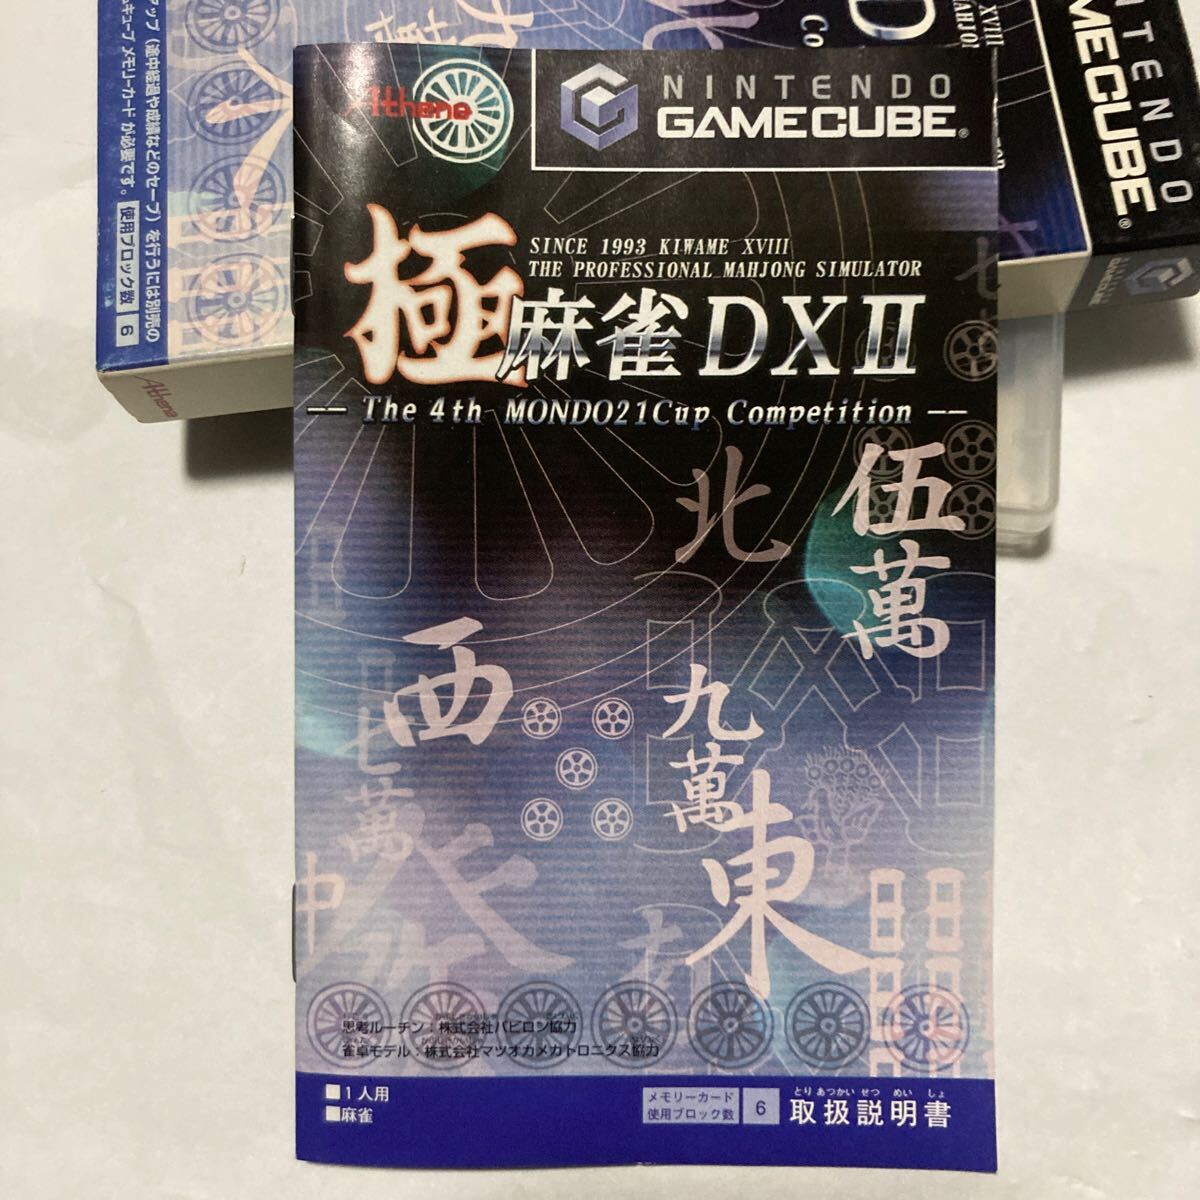 送料無料 GC 極 麻雀DX2 The 4th MONDO21Cup Competition 麻雀DXⅡ ゲームキューブ GAME CUBE NINTENDO NGC KIWAME MAHJONG ニンテンドー_画像4